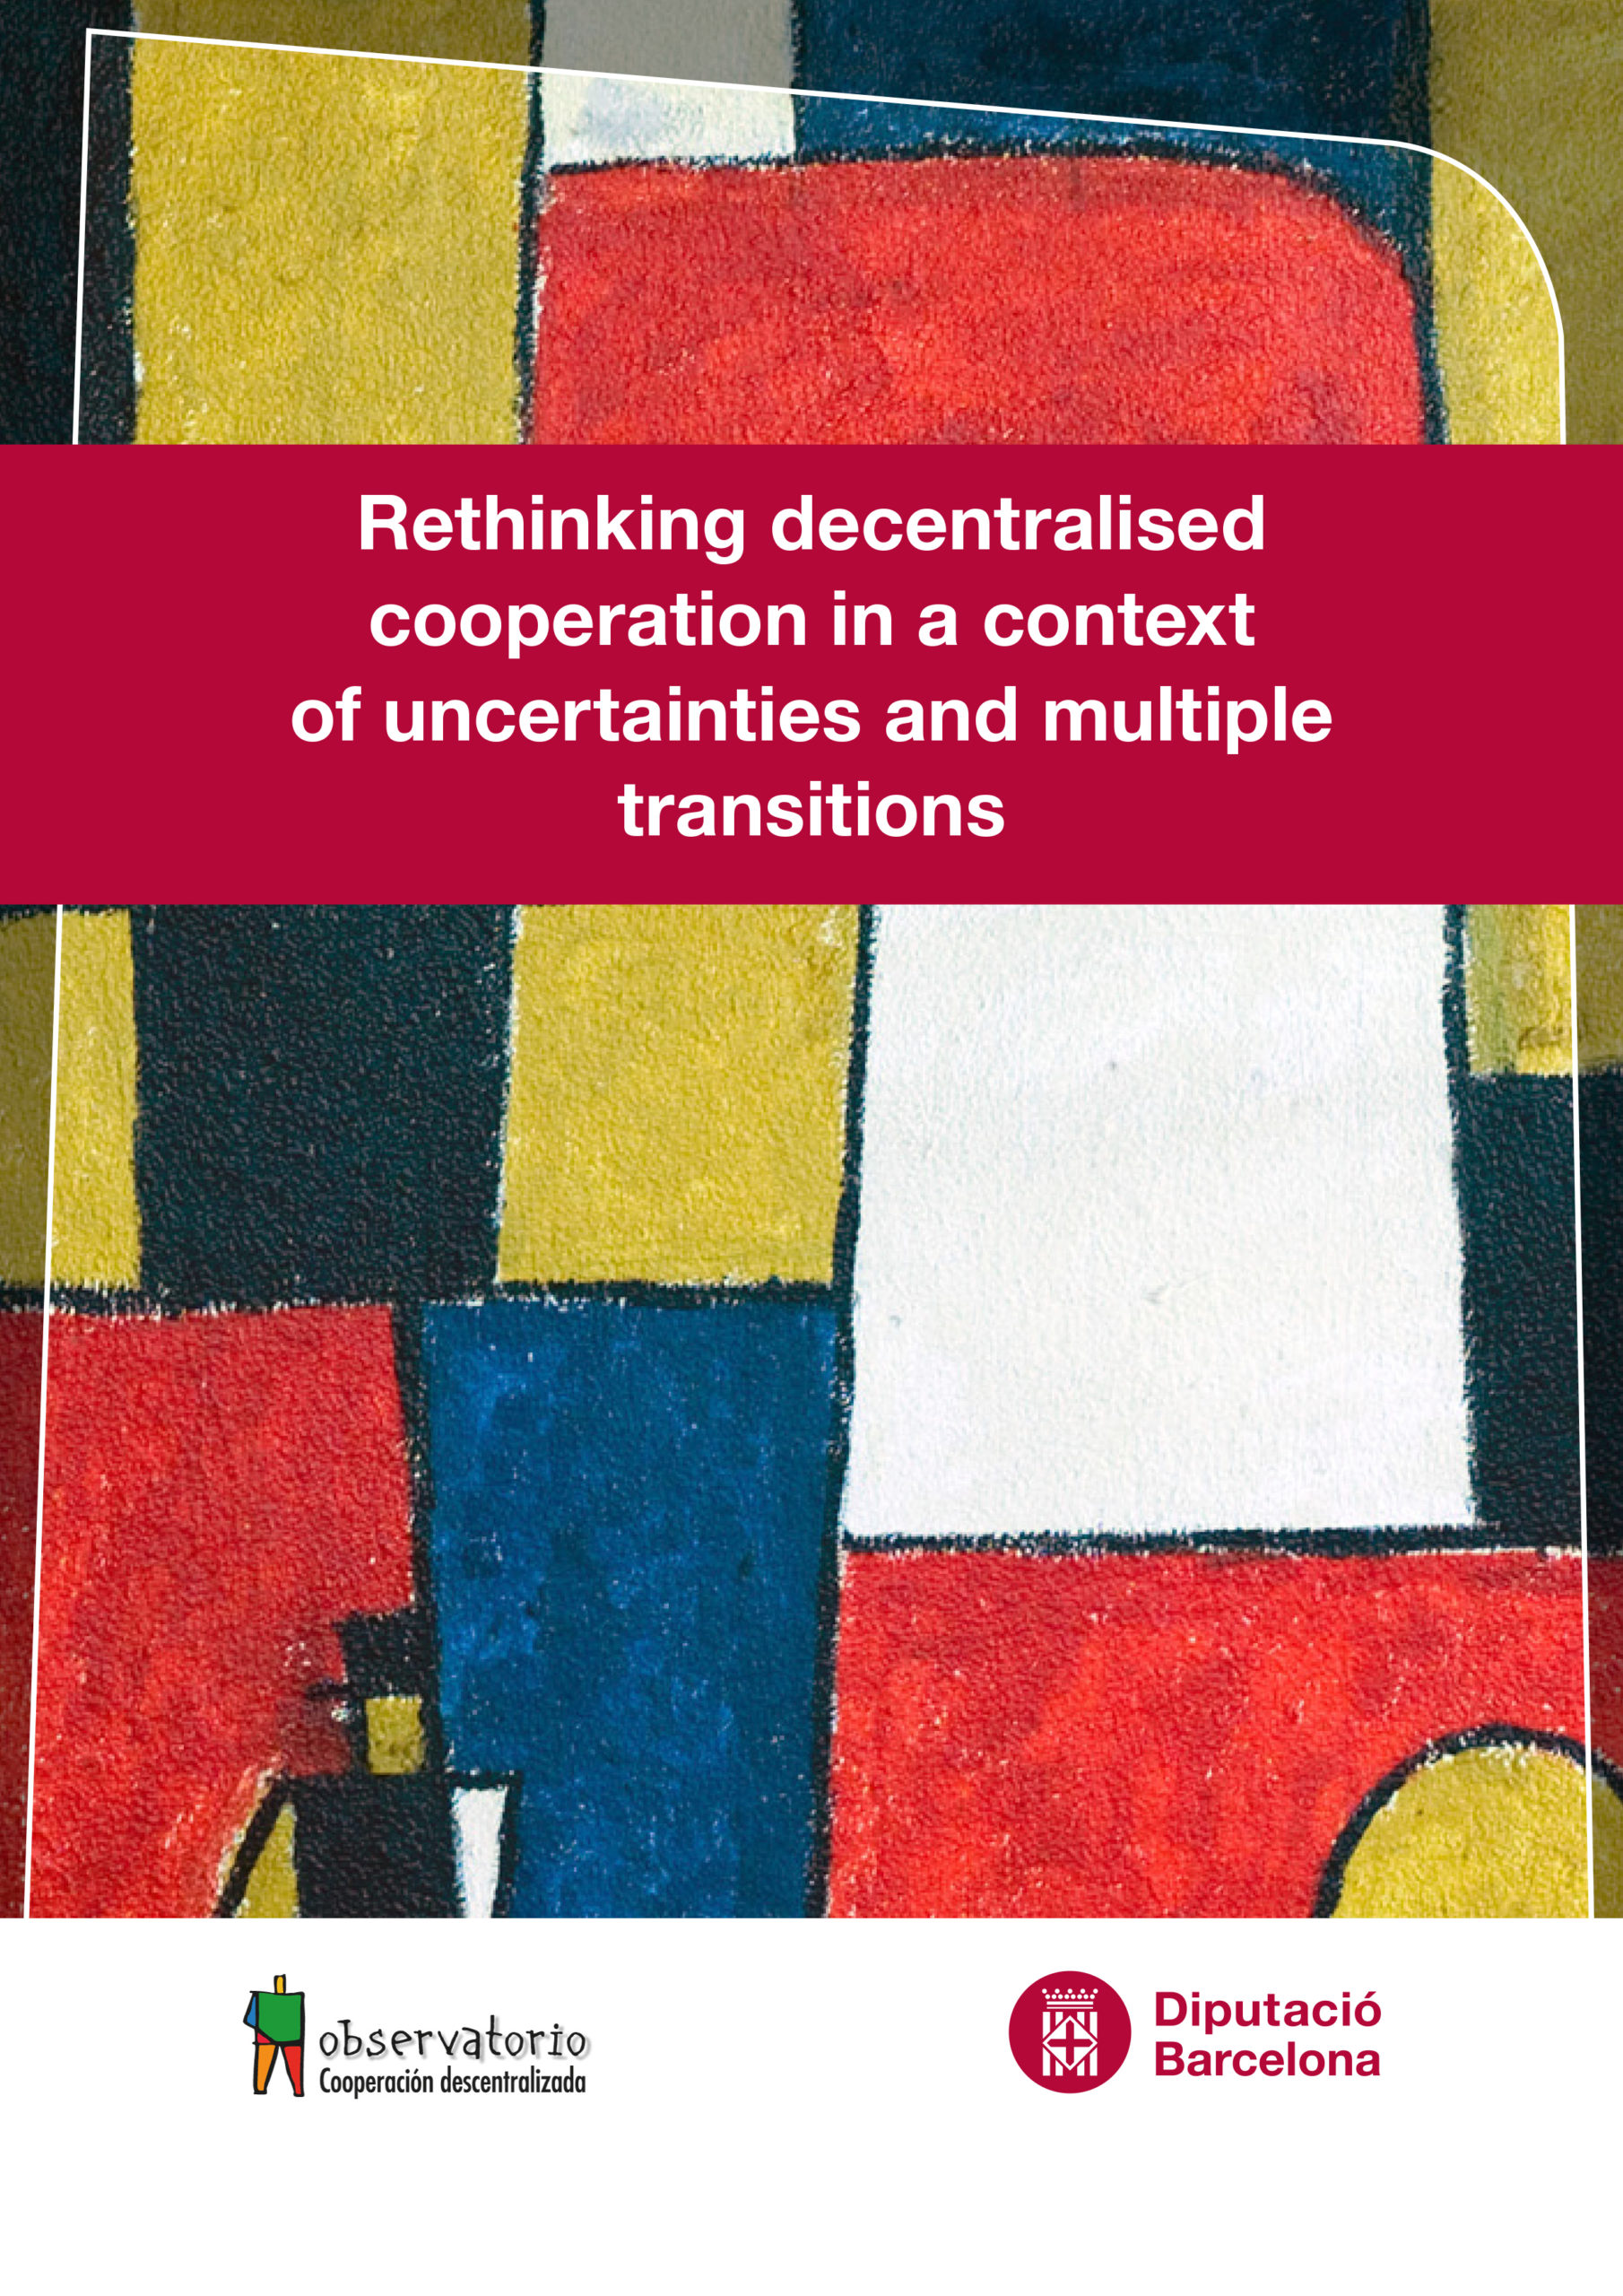 Repensar la cooperación descentralizada en un contexto de incertidumbres y transiciones múltiples